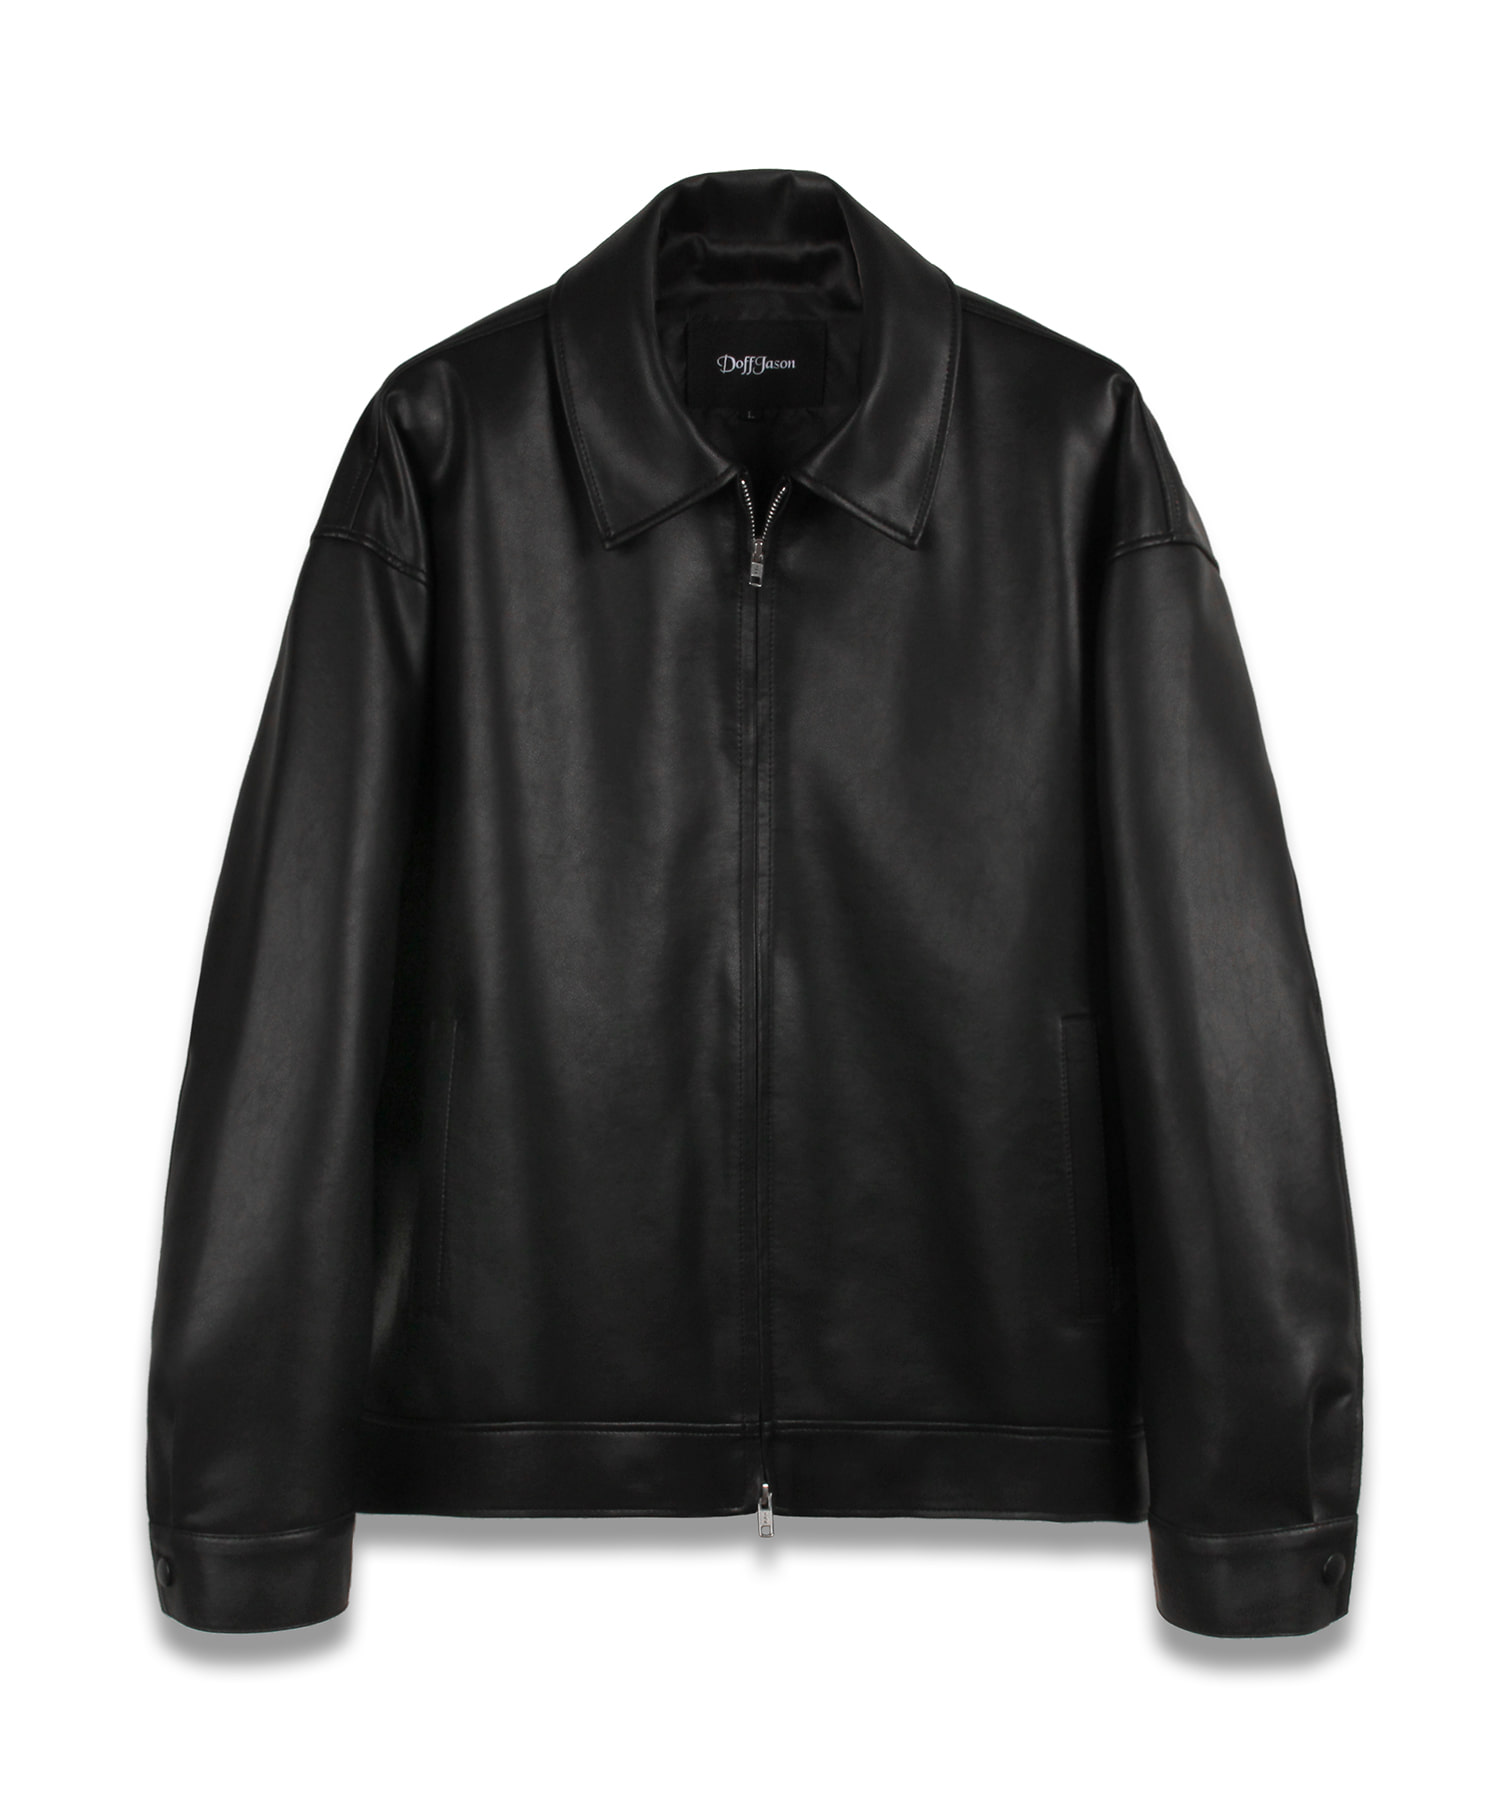 Overfit vegan leather single jacket